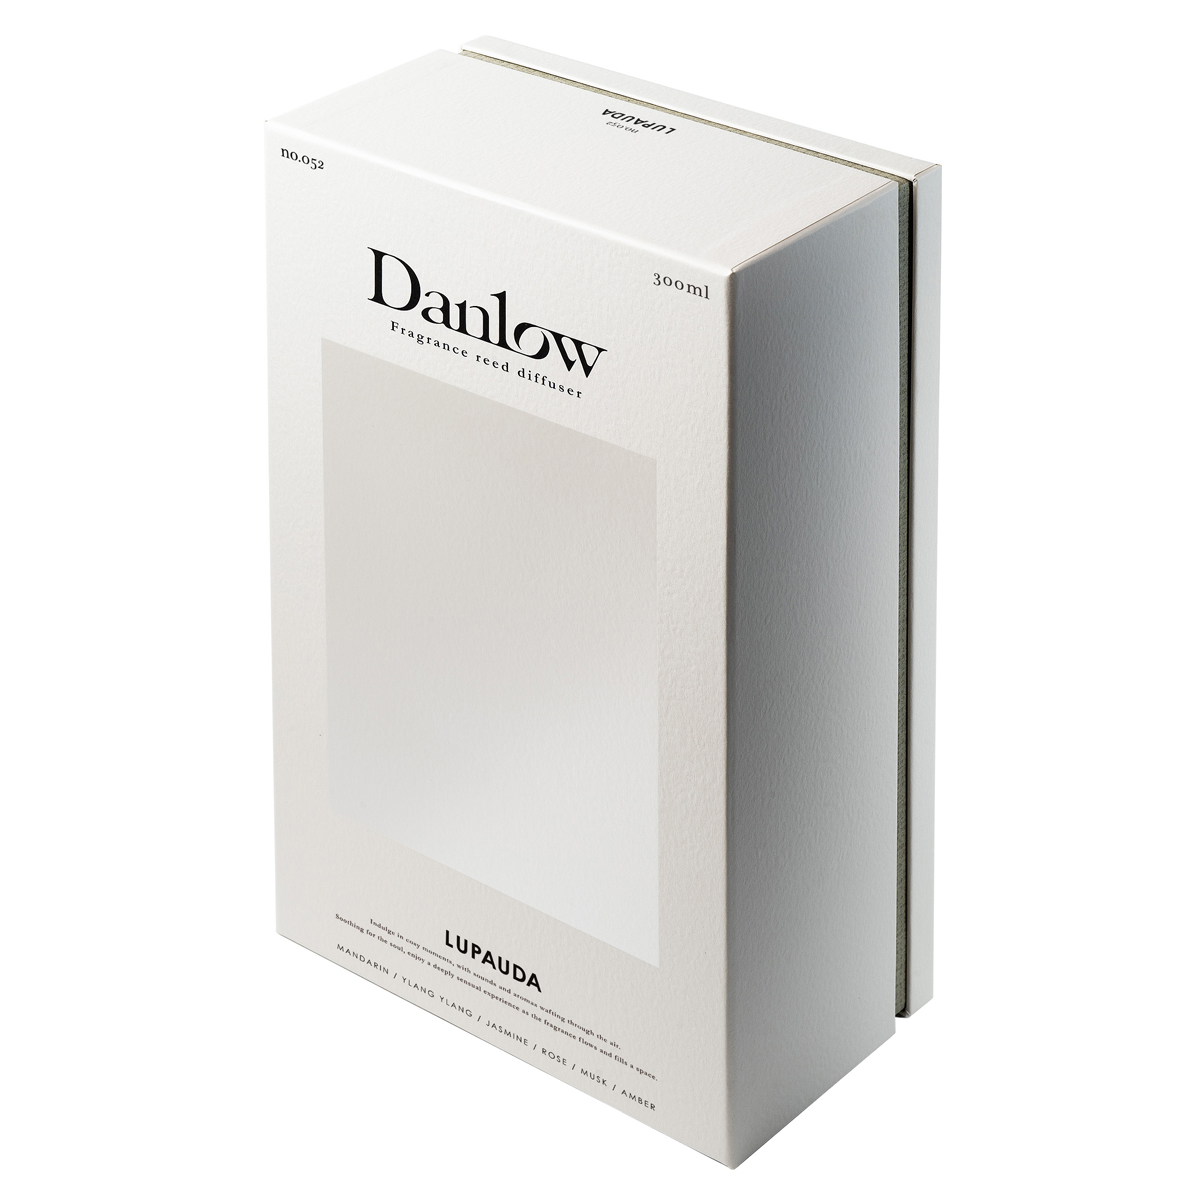 「ダンロウ」から3つの香りをそろえた新作リードディフューザーが発売 - WWDJAPAN